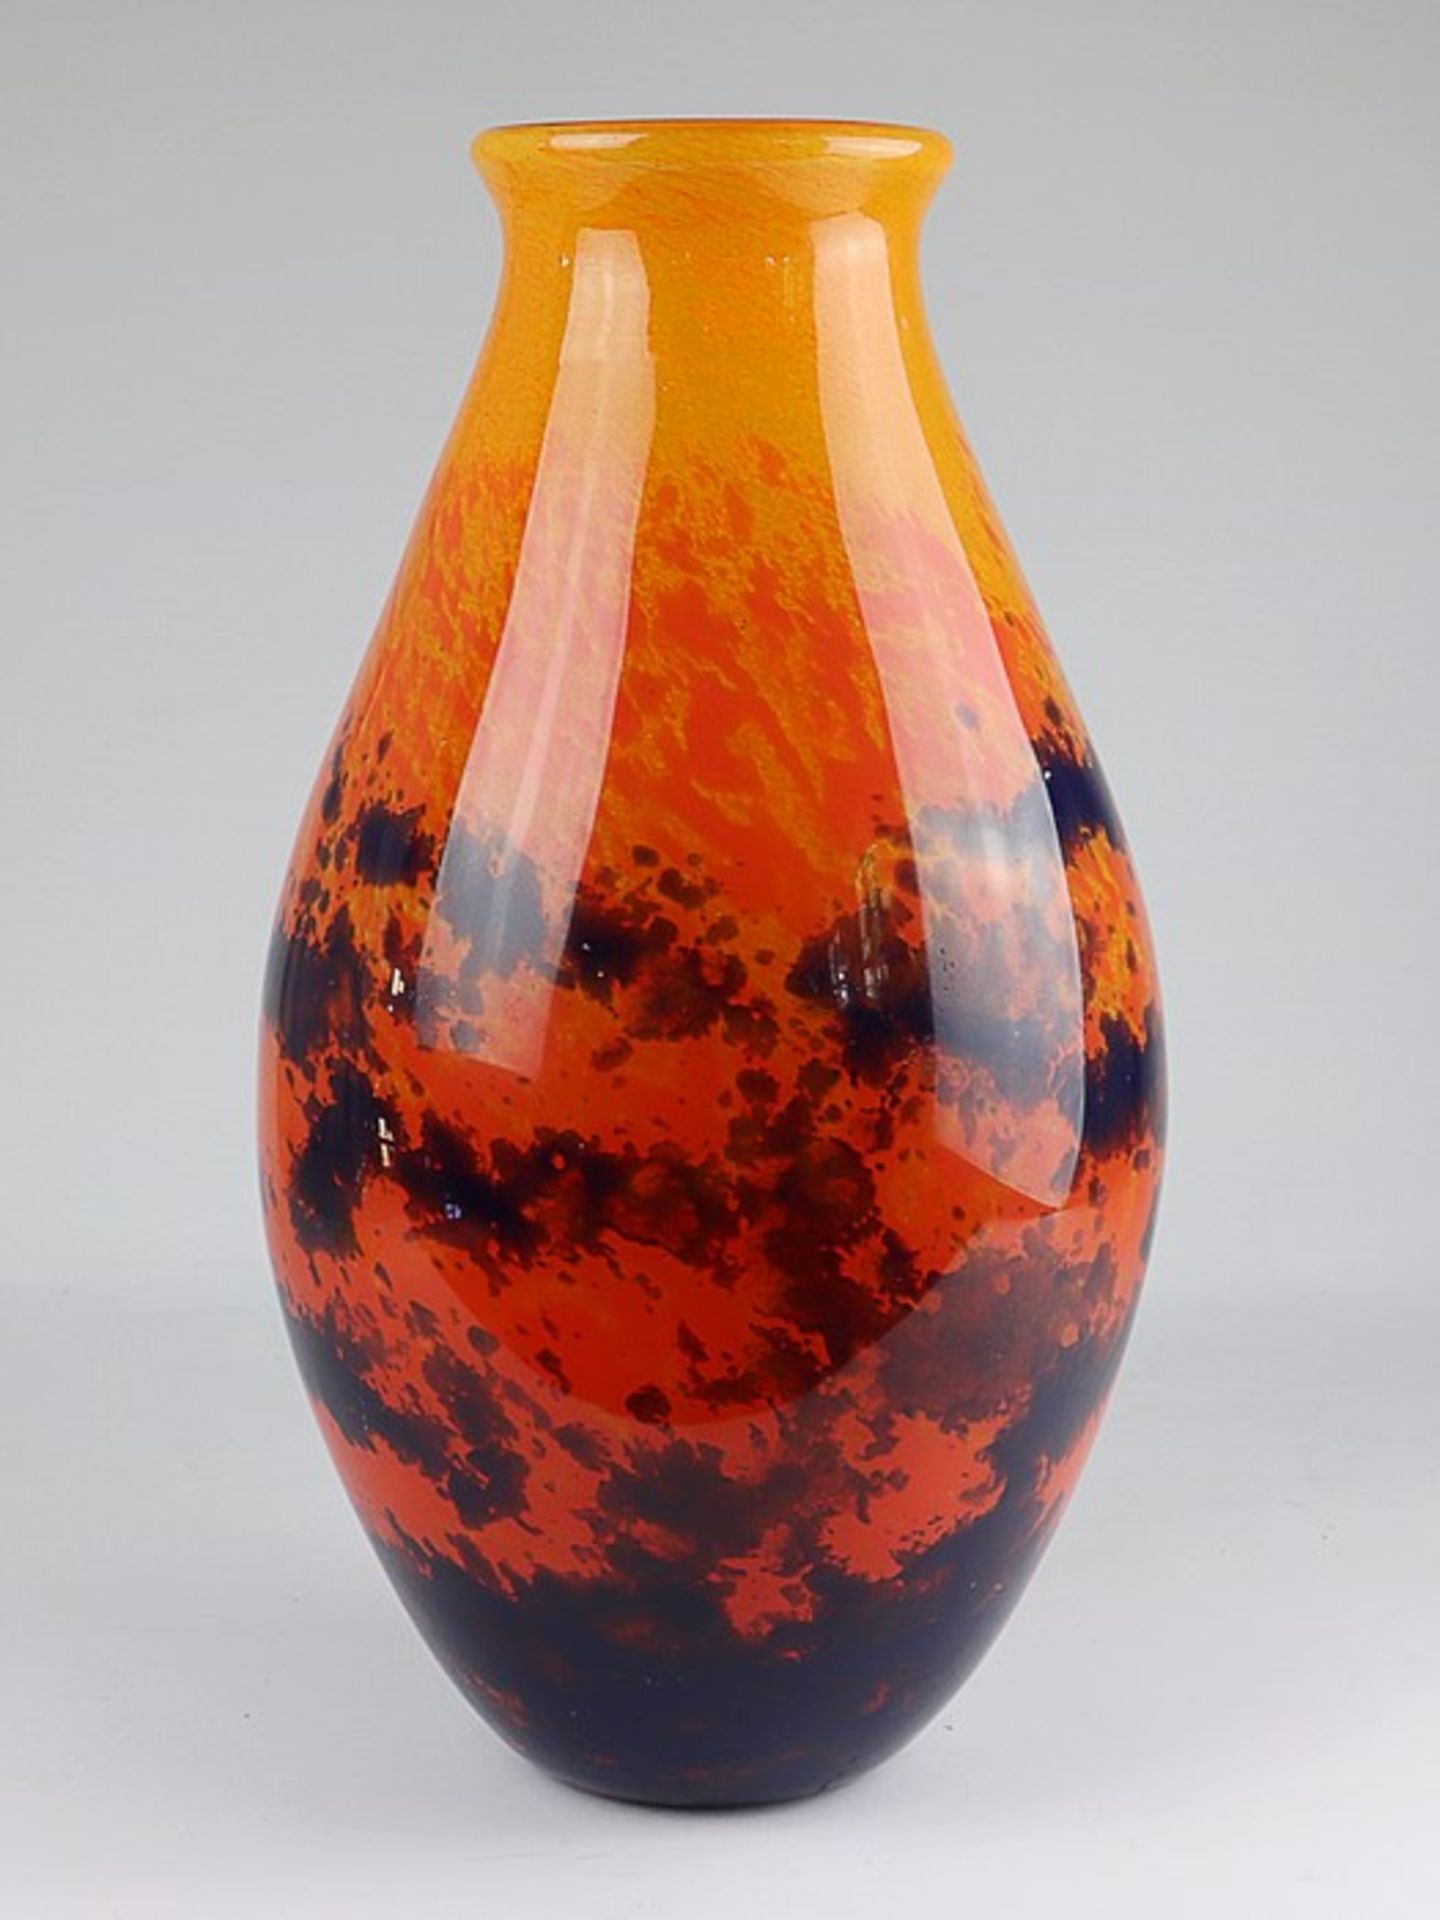 Degué - Vaseab 1926, Verrerie d' Art Degué, Cristalleries de Compiègne, Frankreich, farbloses dickw.